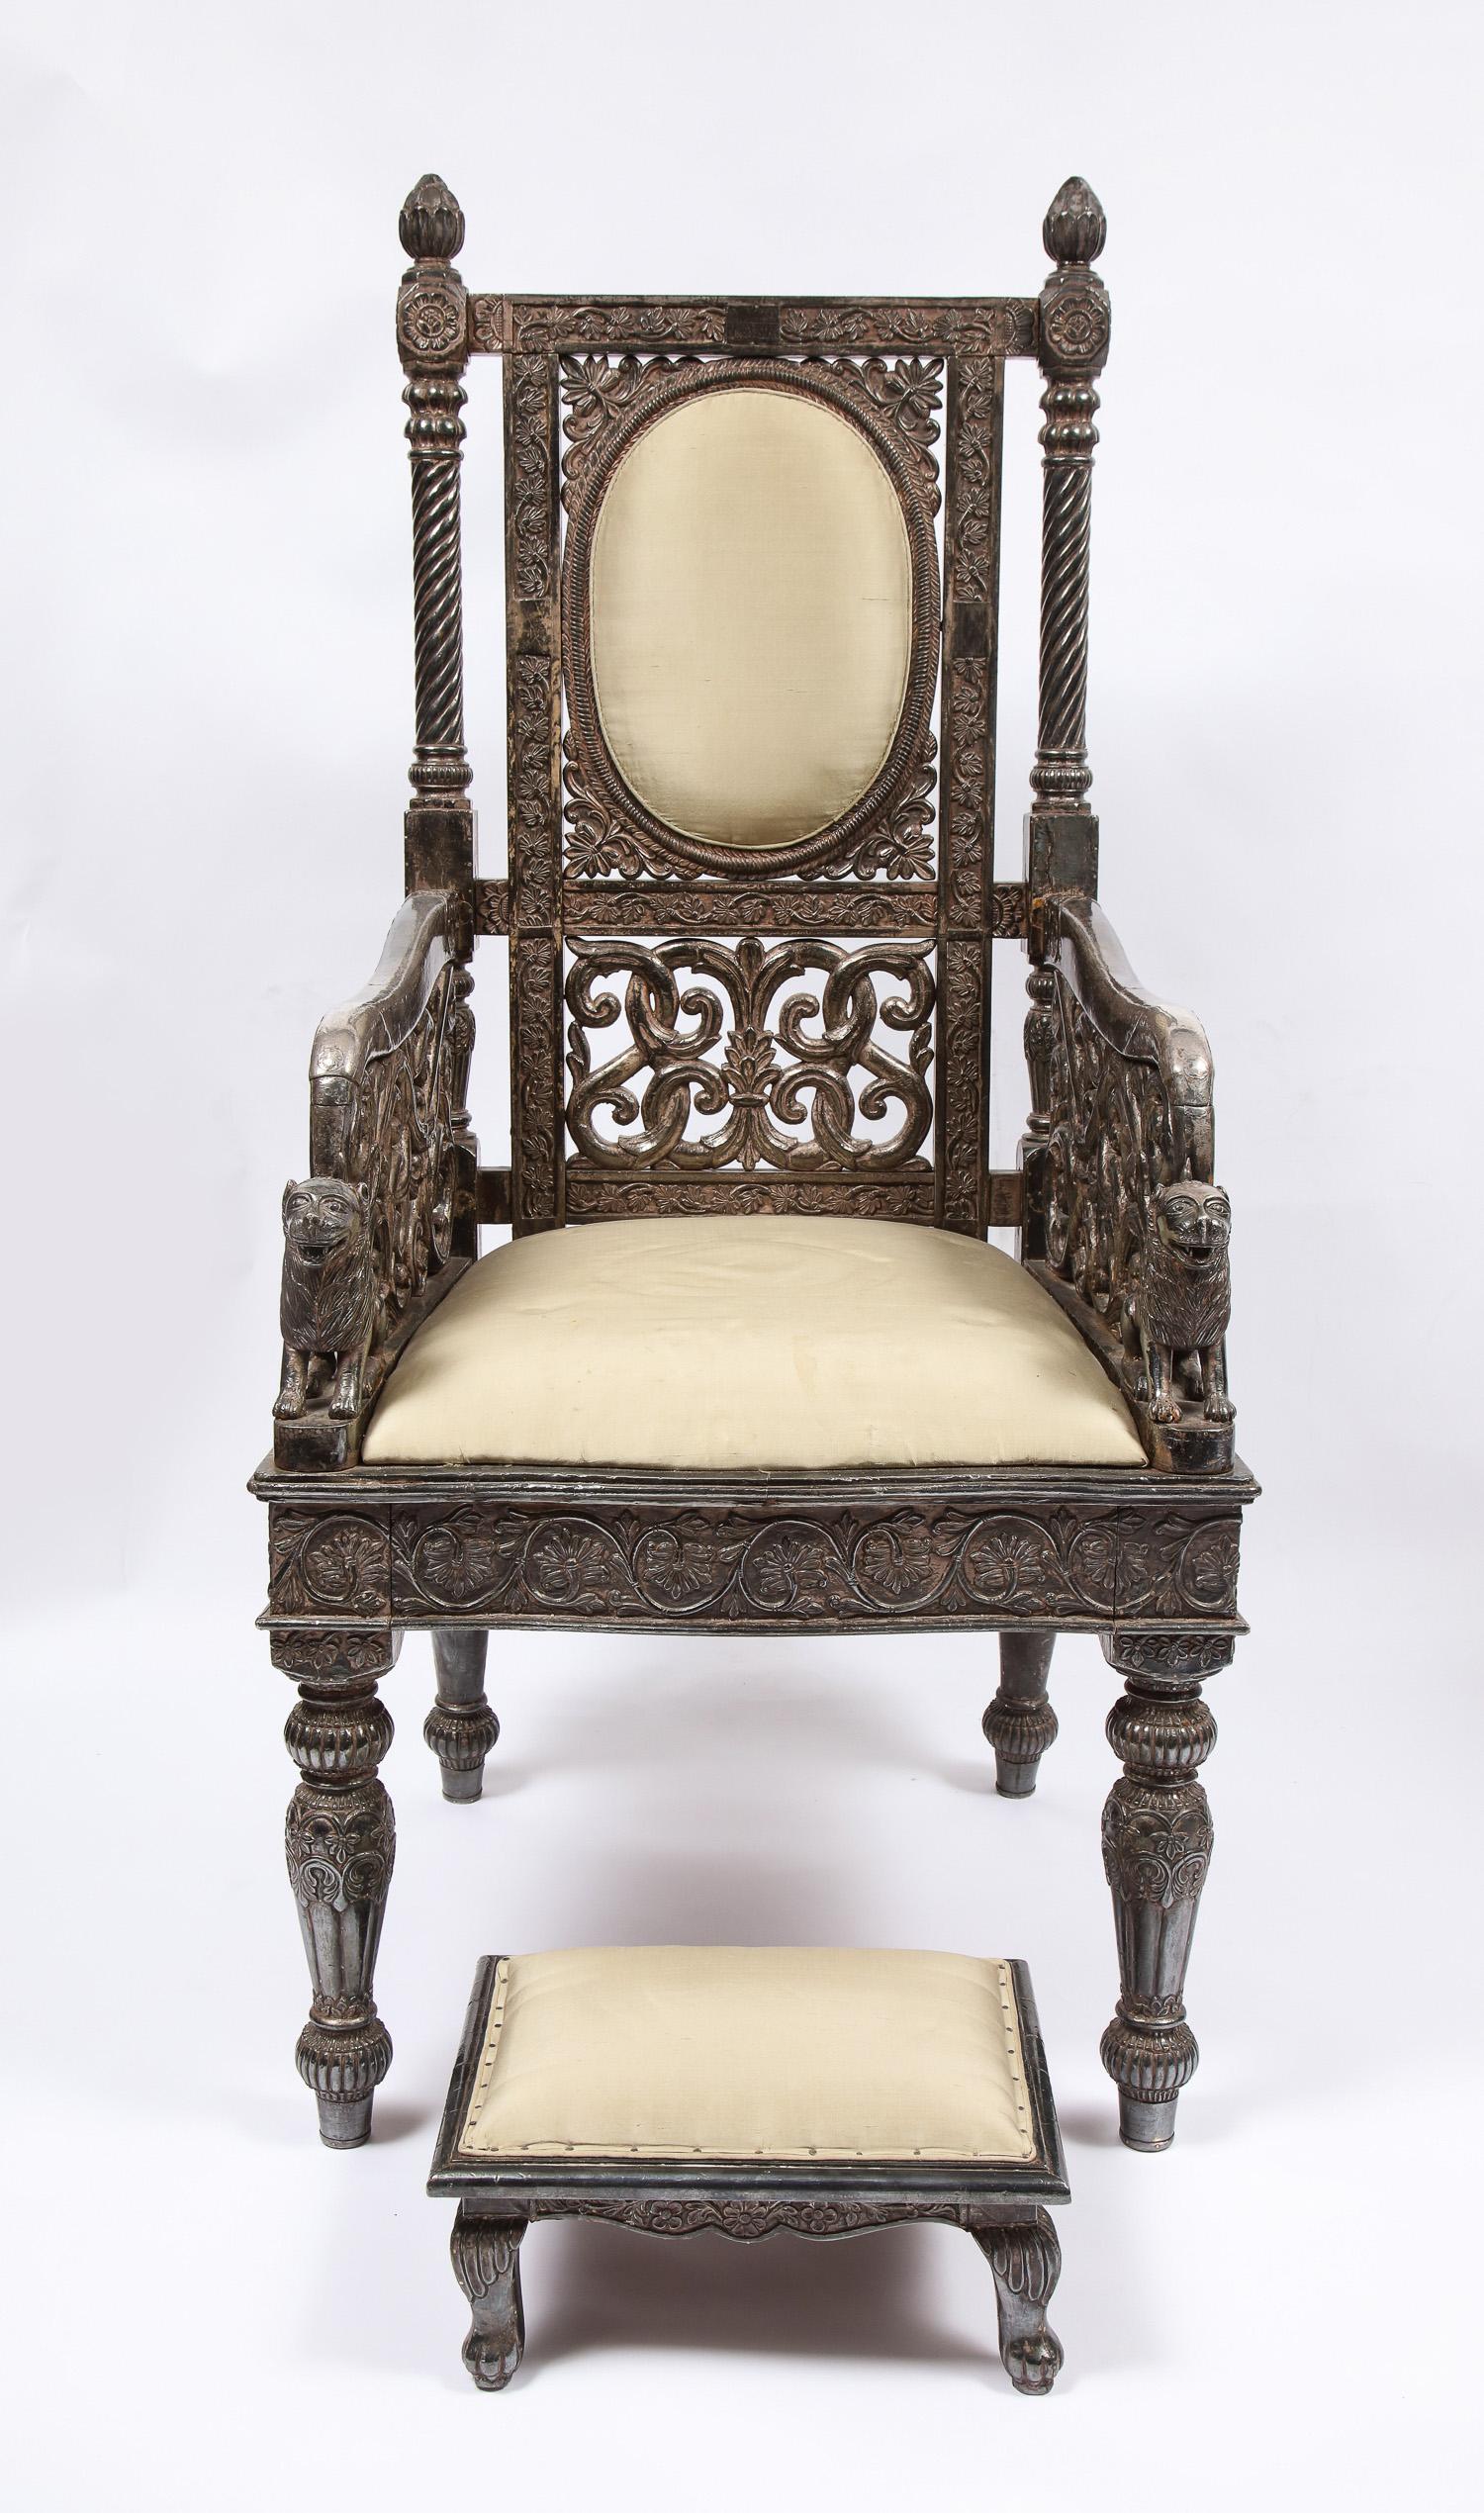 Magnifique et rare fauteuil trône de cérémonie de style Moghol indien, en argent incrusté et doré, fabriqué pour le Maharajah. Ces chaises de trône ont joué un rôle crucial dans la conception de la royauté pour tous les maharadjahs indiens des